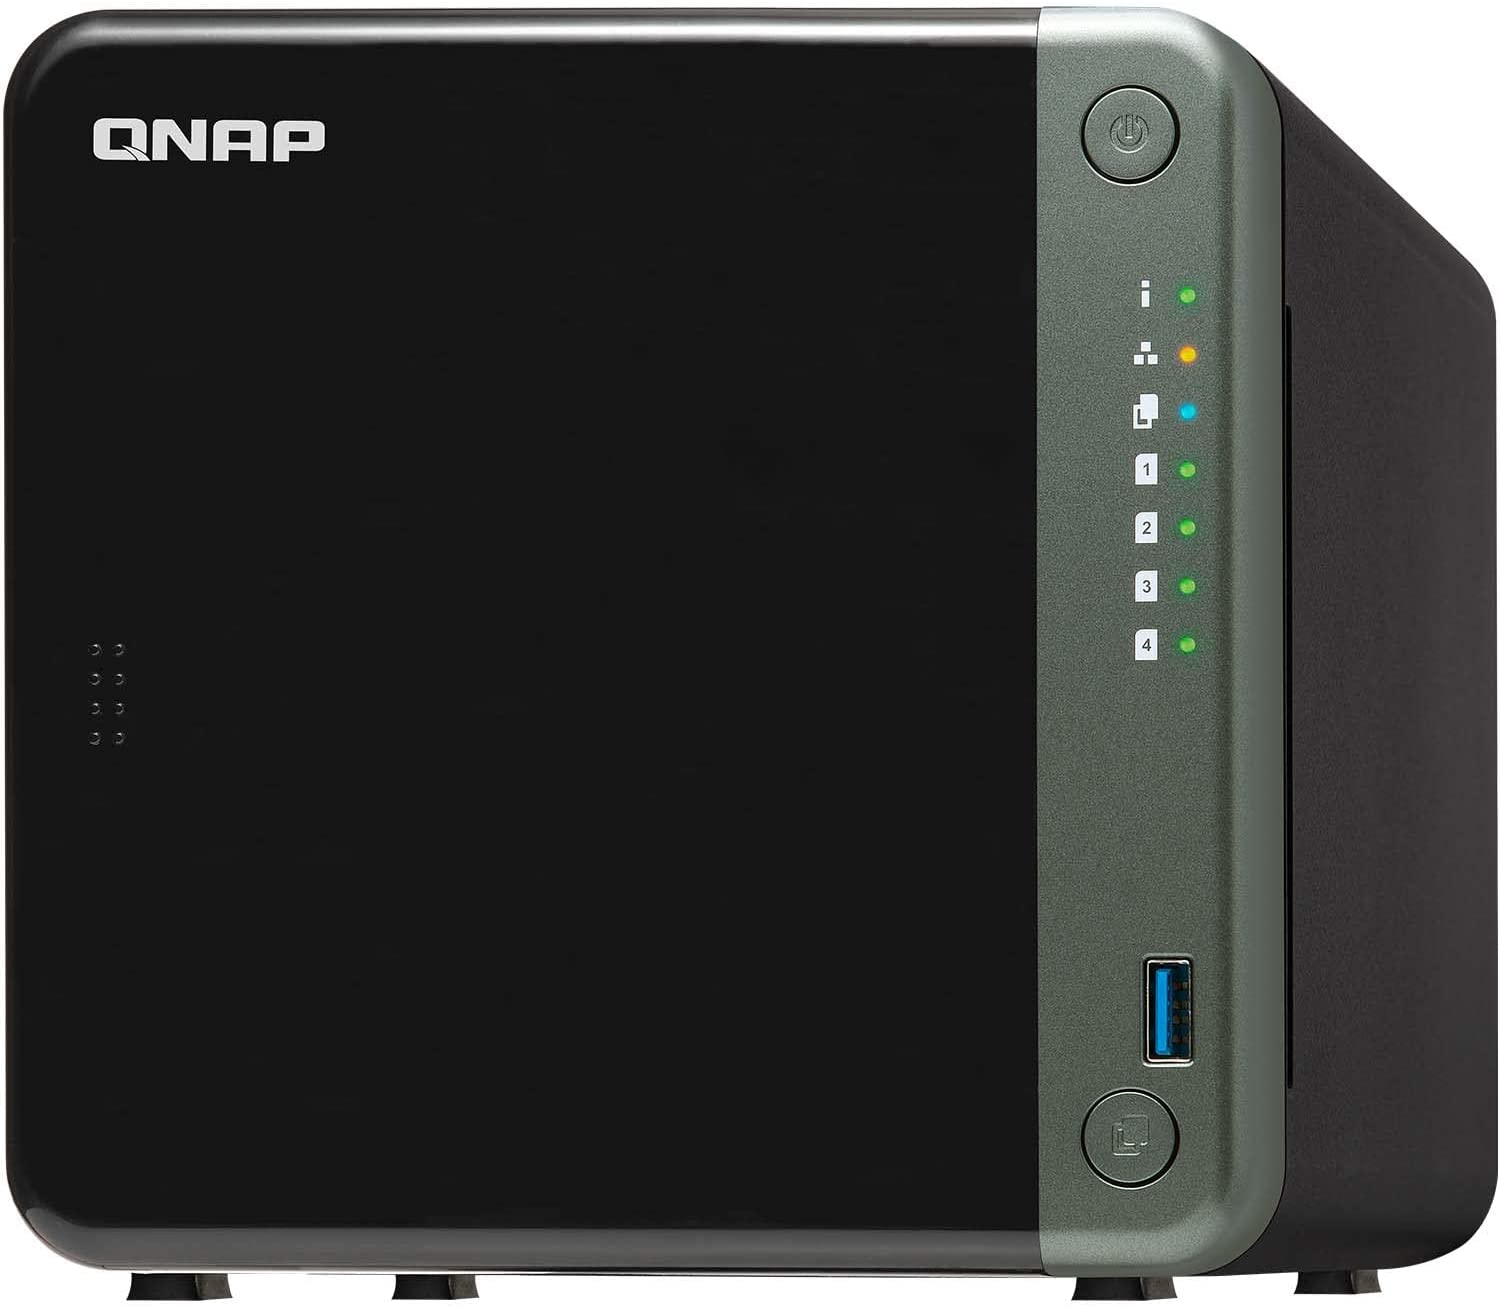 QNAP TS-453D-4G 4 Bay NAS for Professionals $439